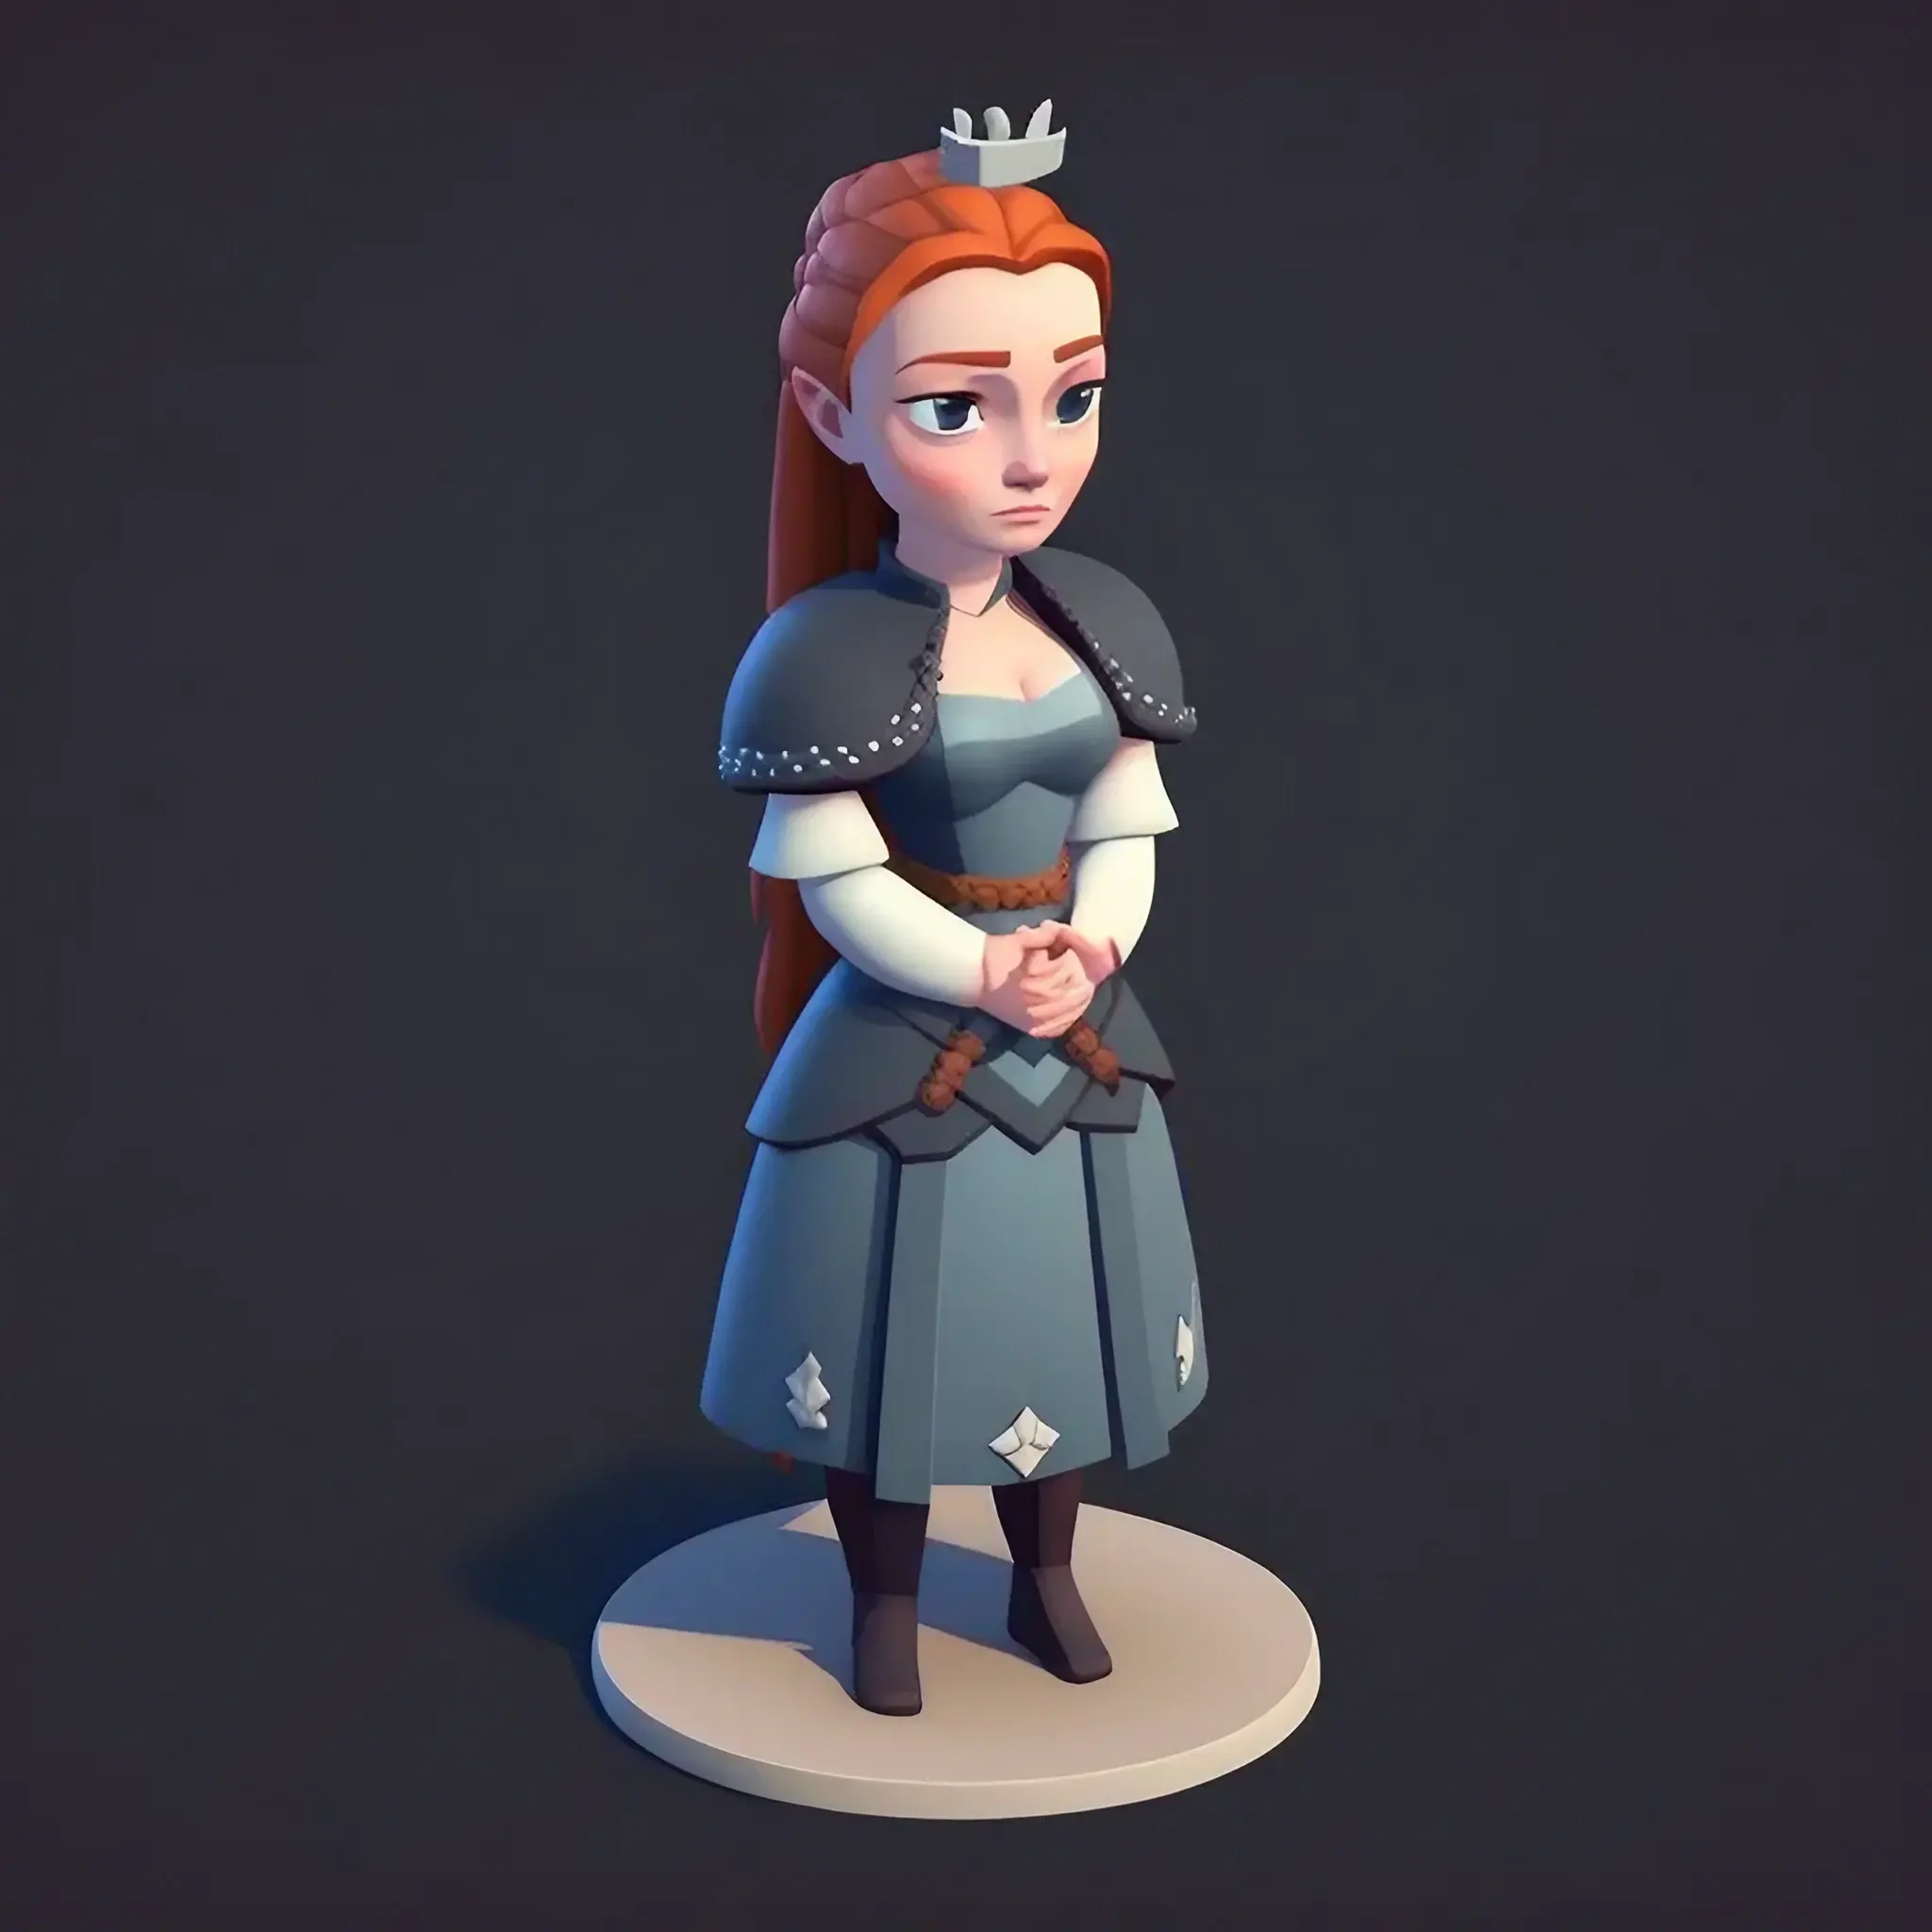 Sansa Stark, isometric, full body, game character, Clash Royale, blender 3d, style of artstation and behance, Vector art